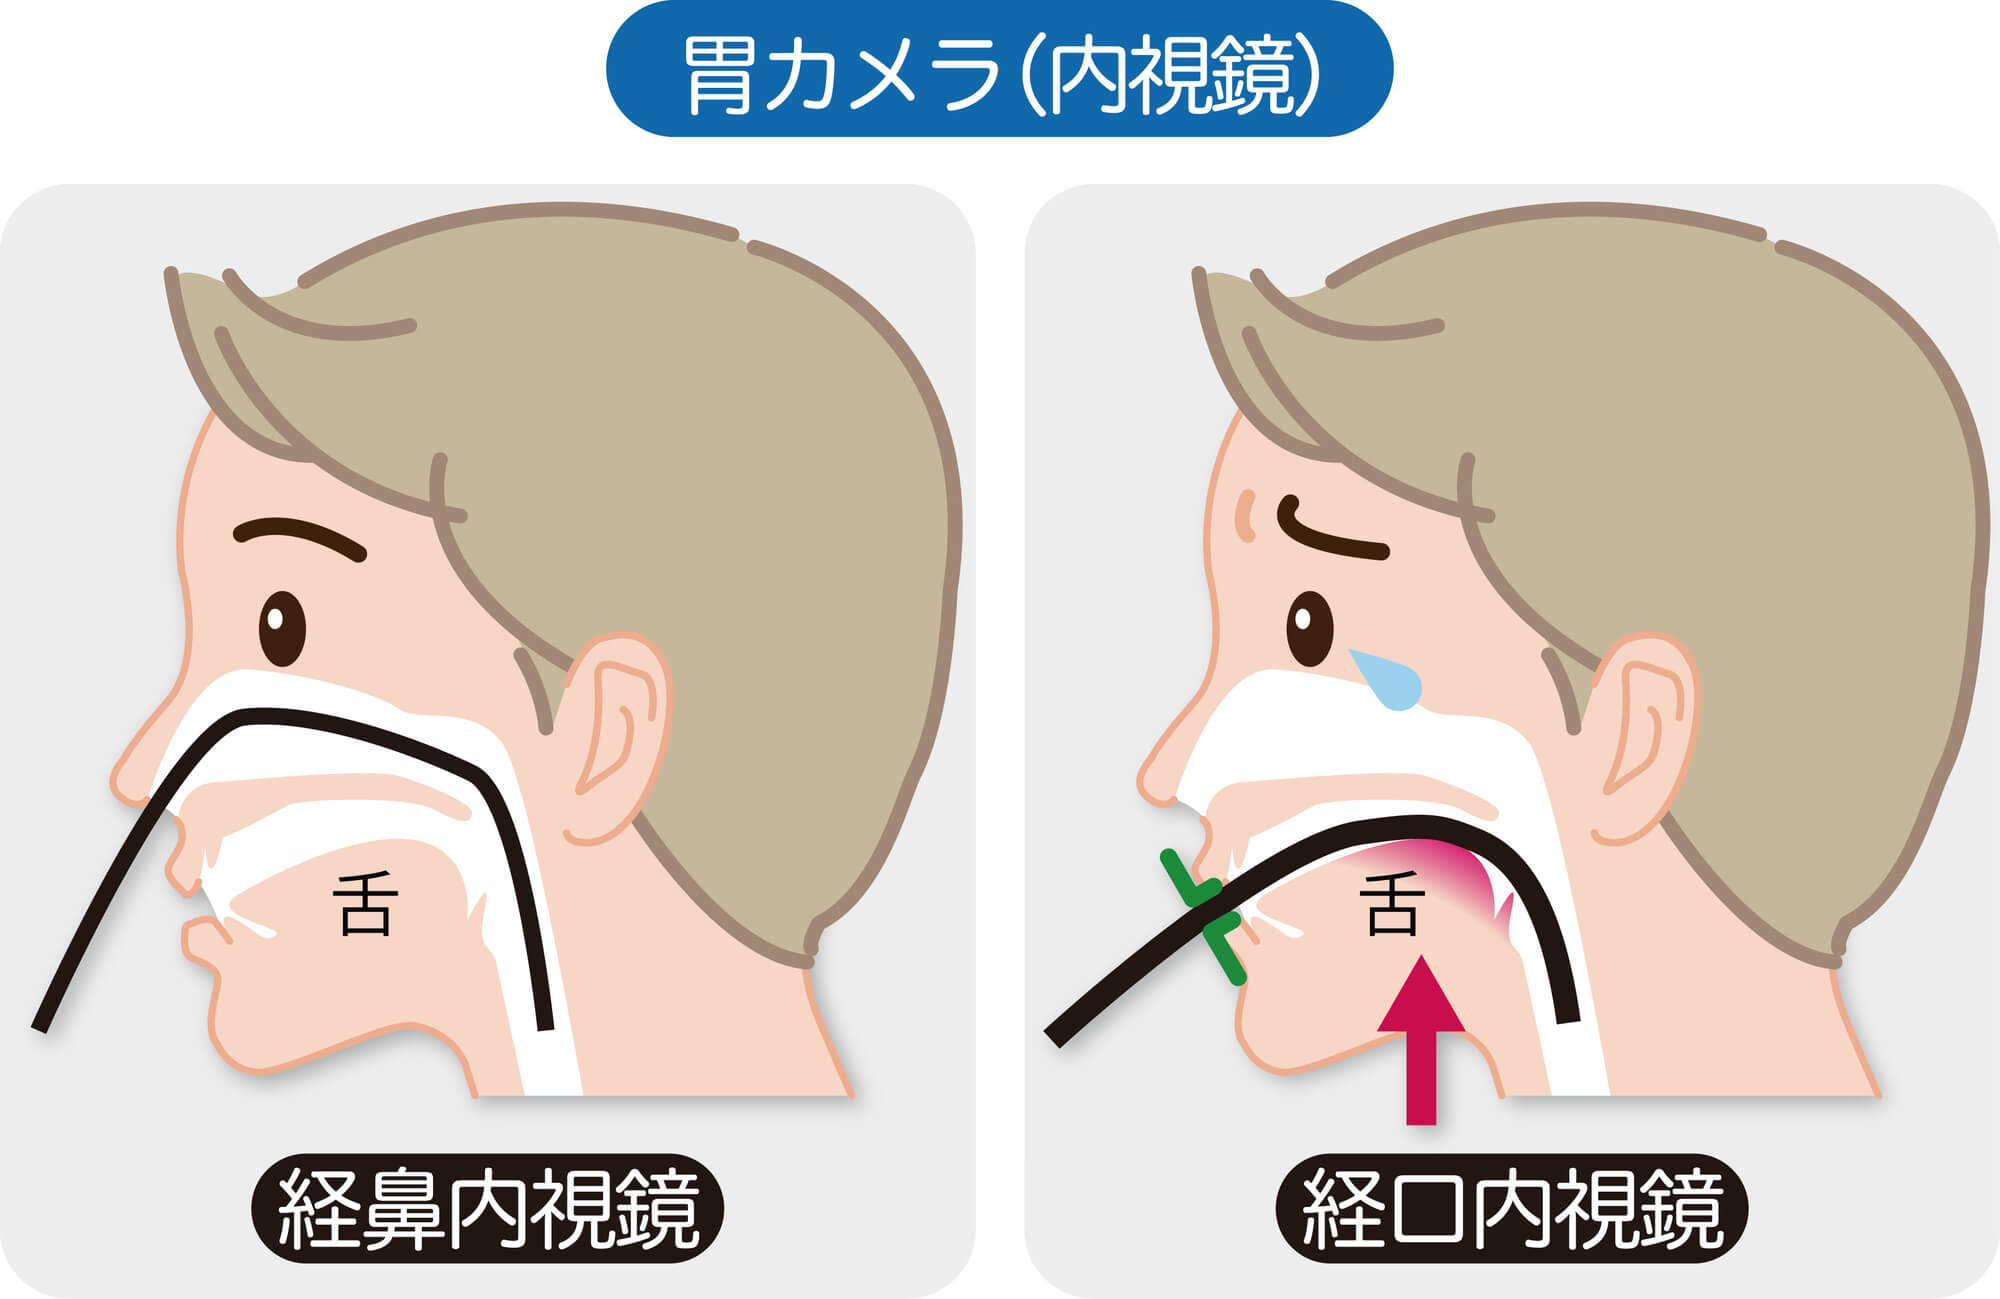 経口・経鼻の選択が可能